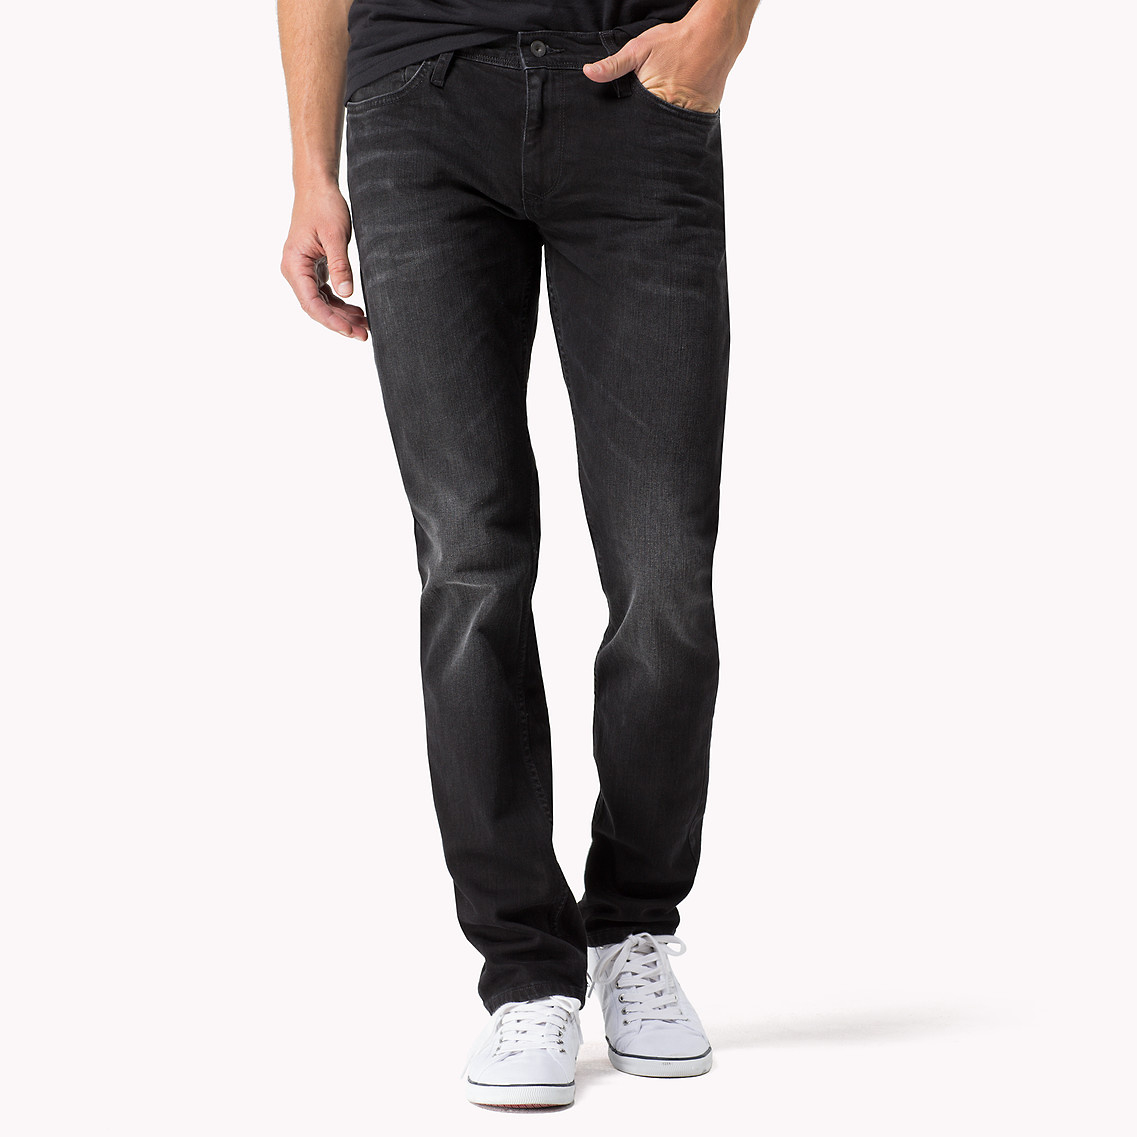 hilfiger black jeans